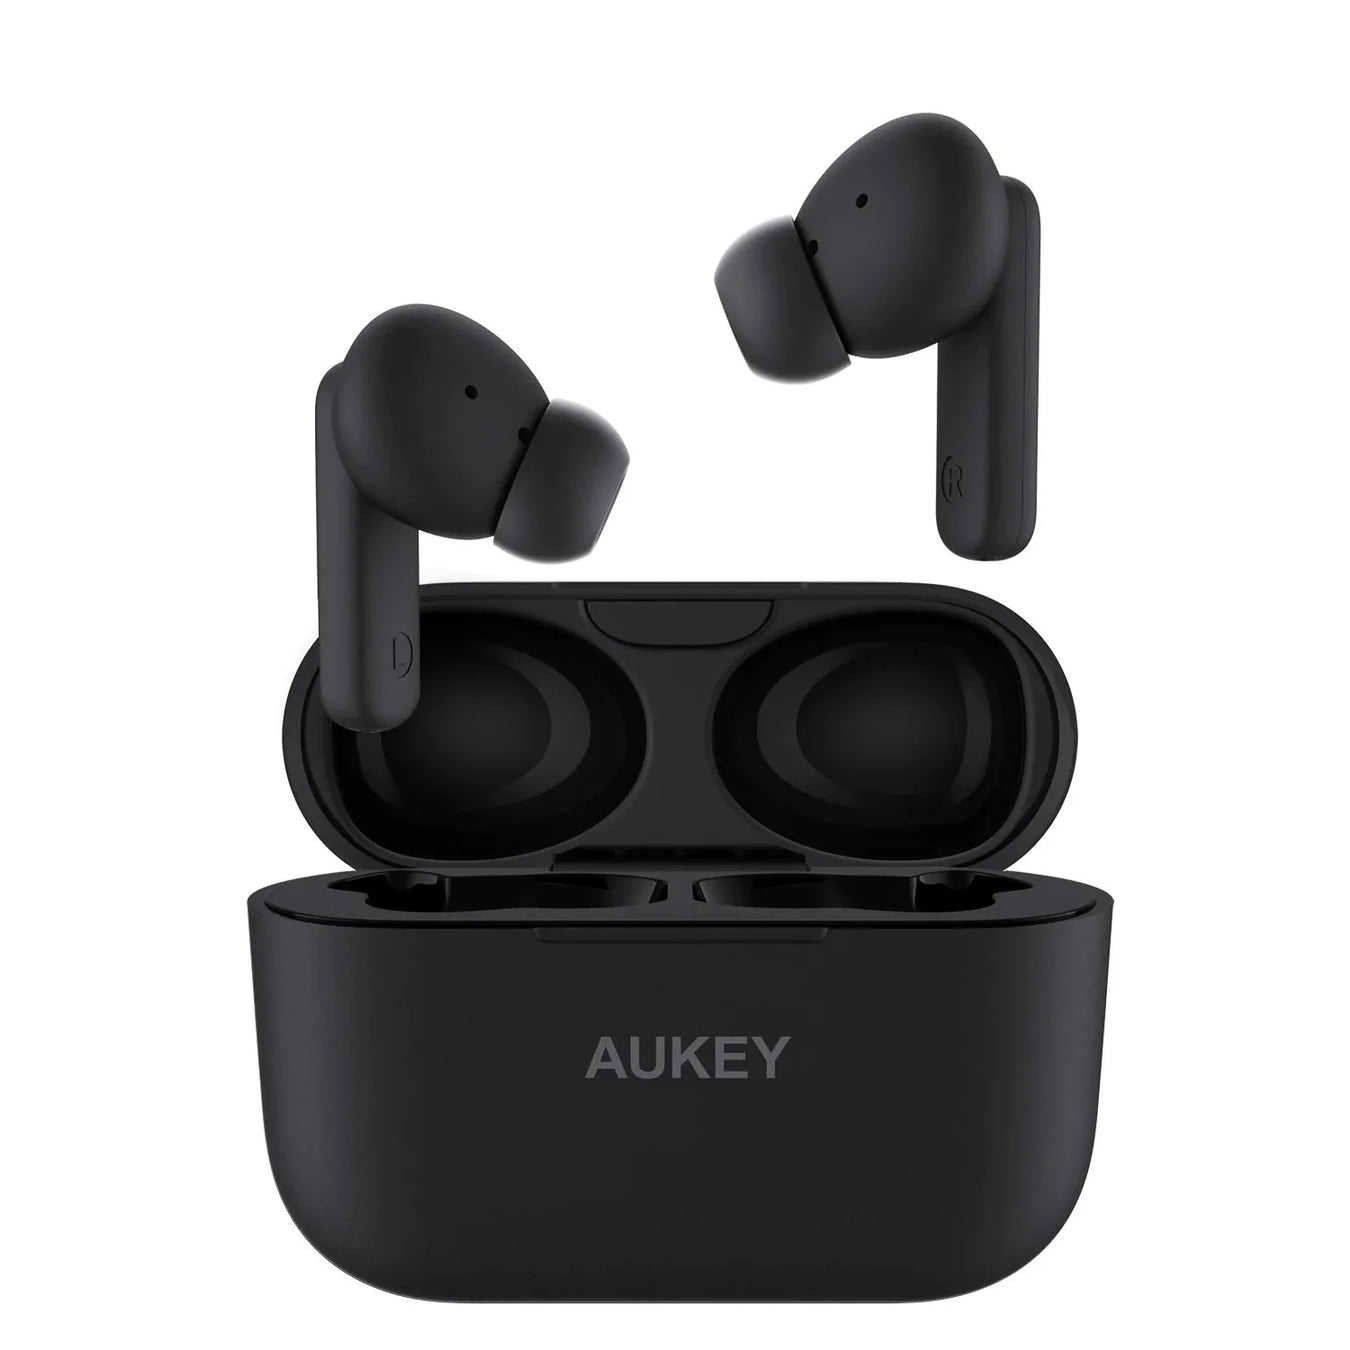 Aukey's Wireless Earphones